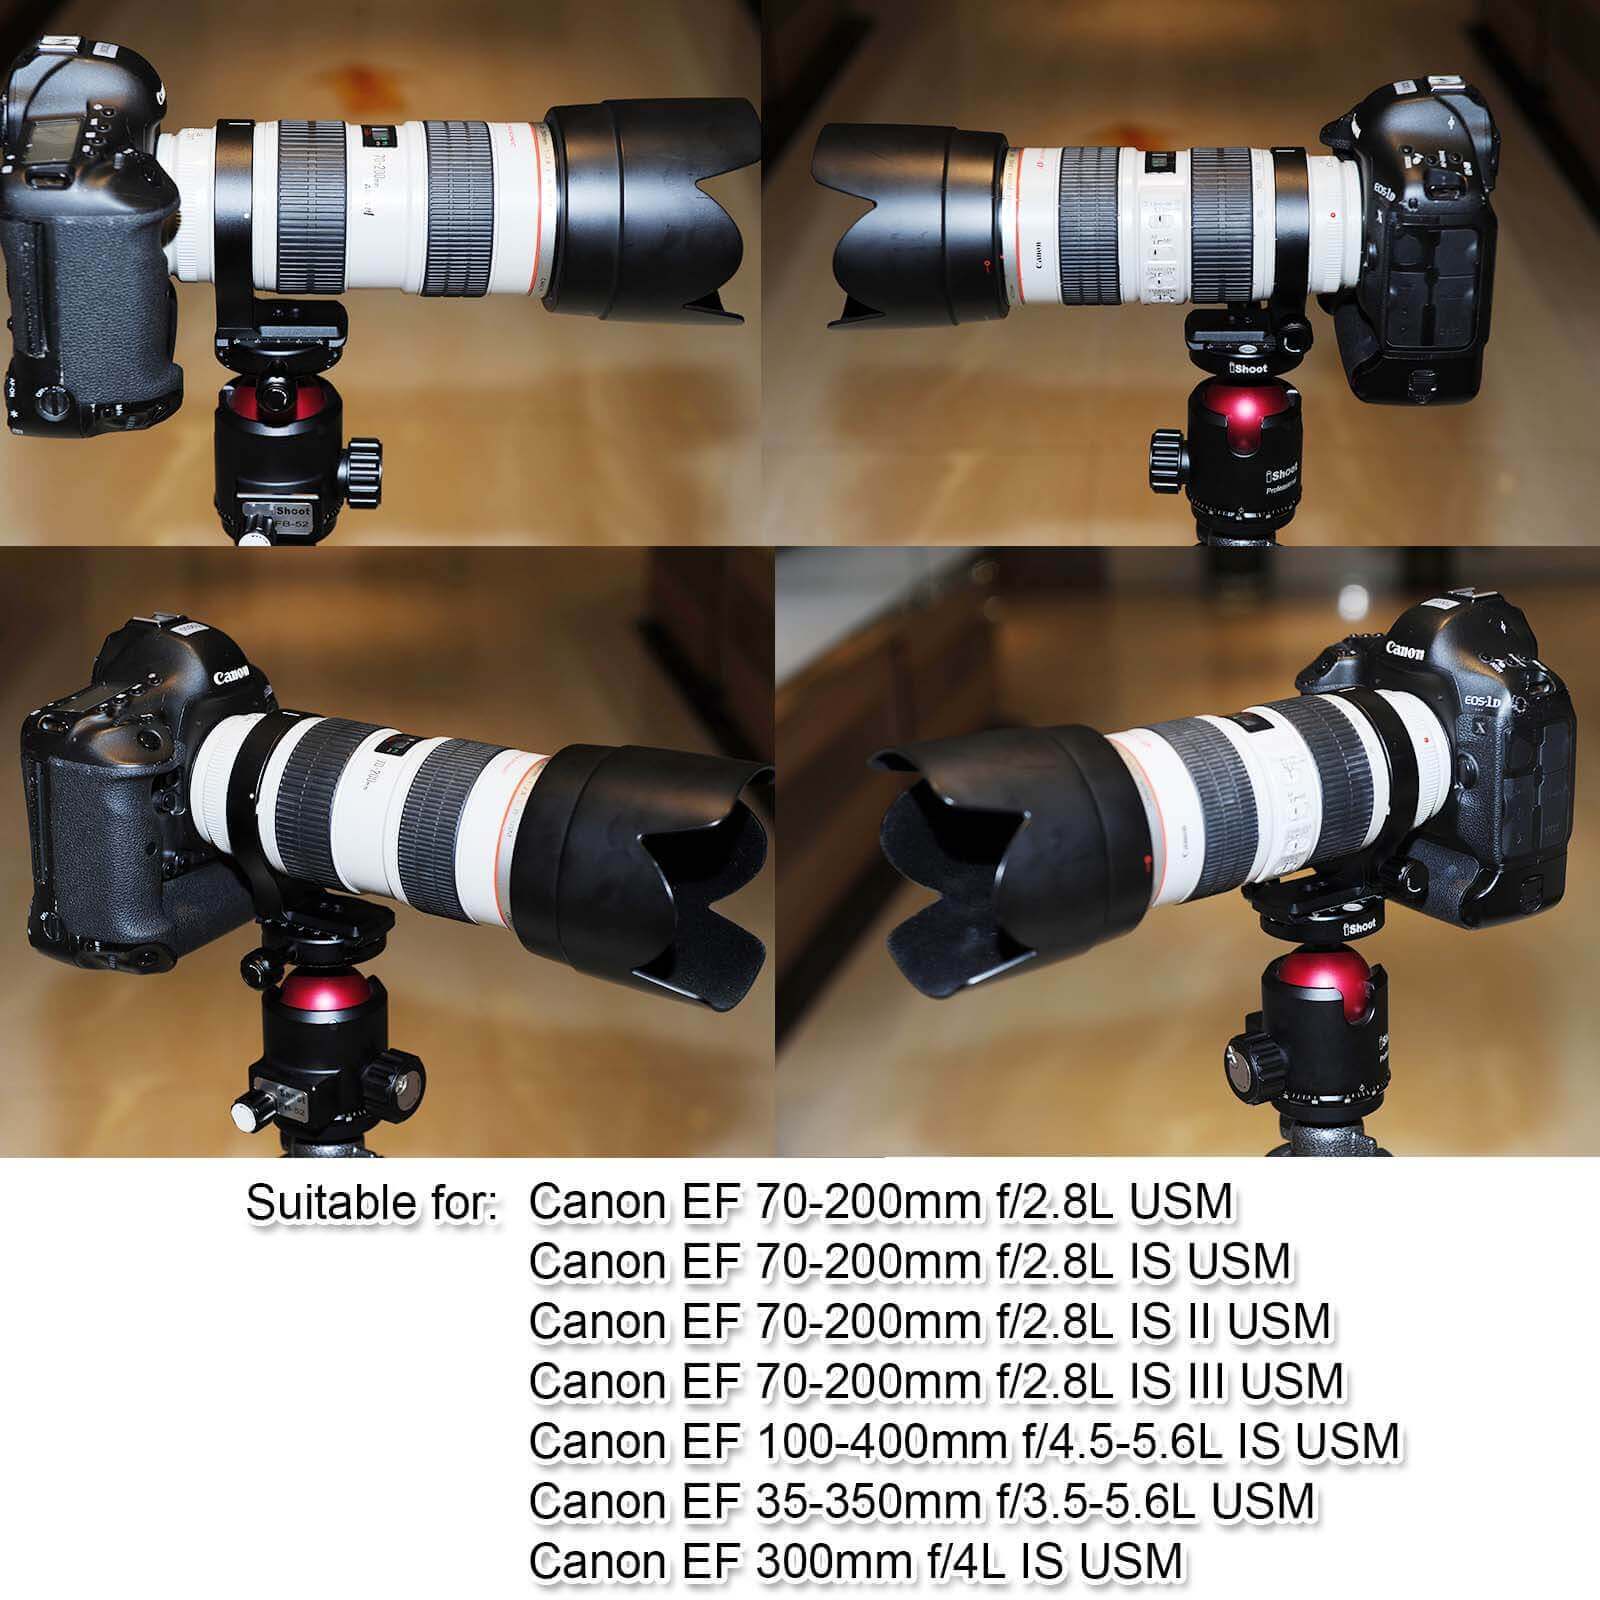 Canon EF 100-400mm f/4.5-5.6L IS USM Collar Retaining Screw Part CA2-6822-010 